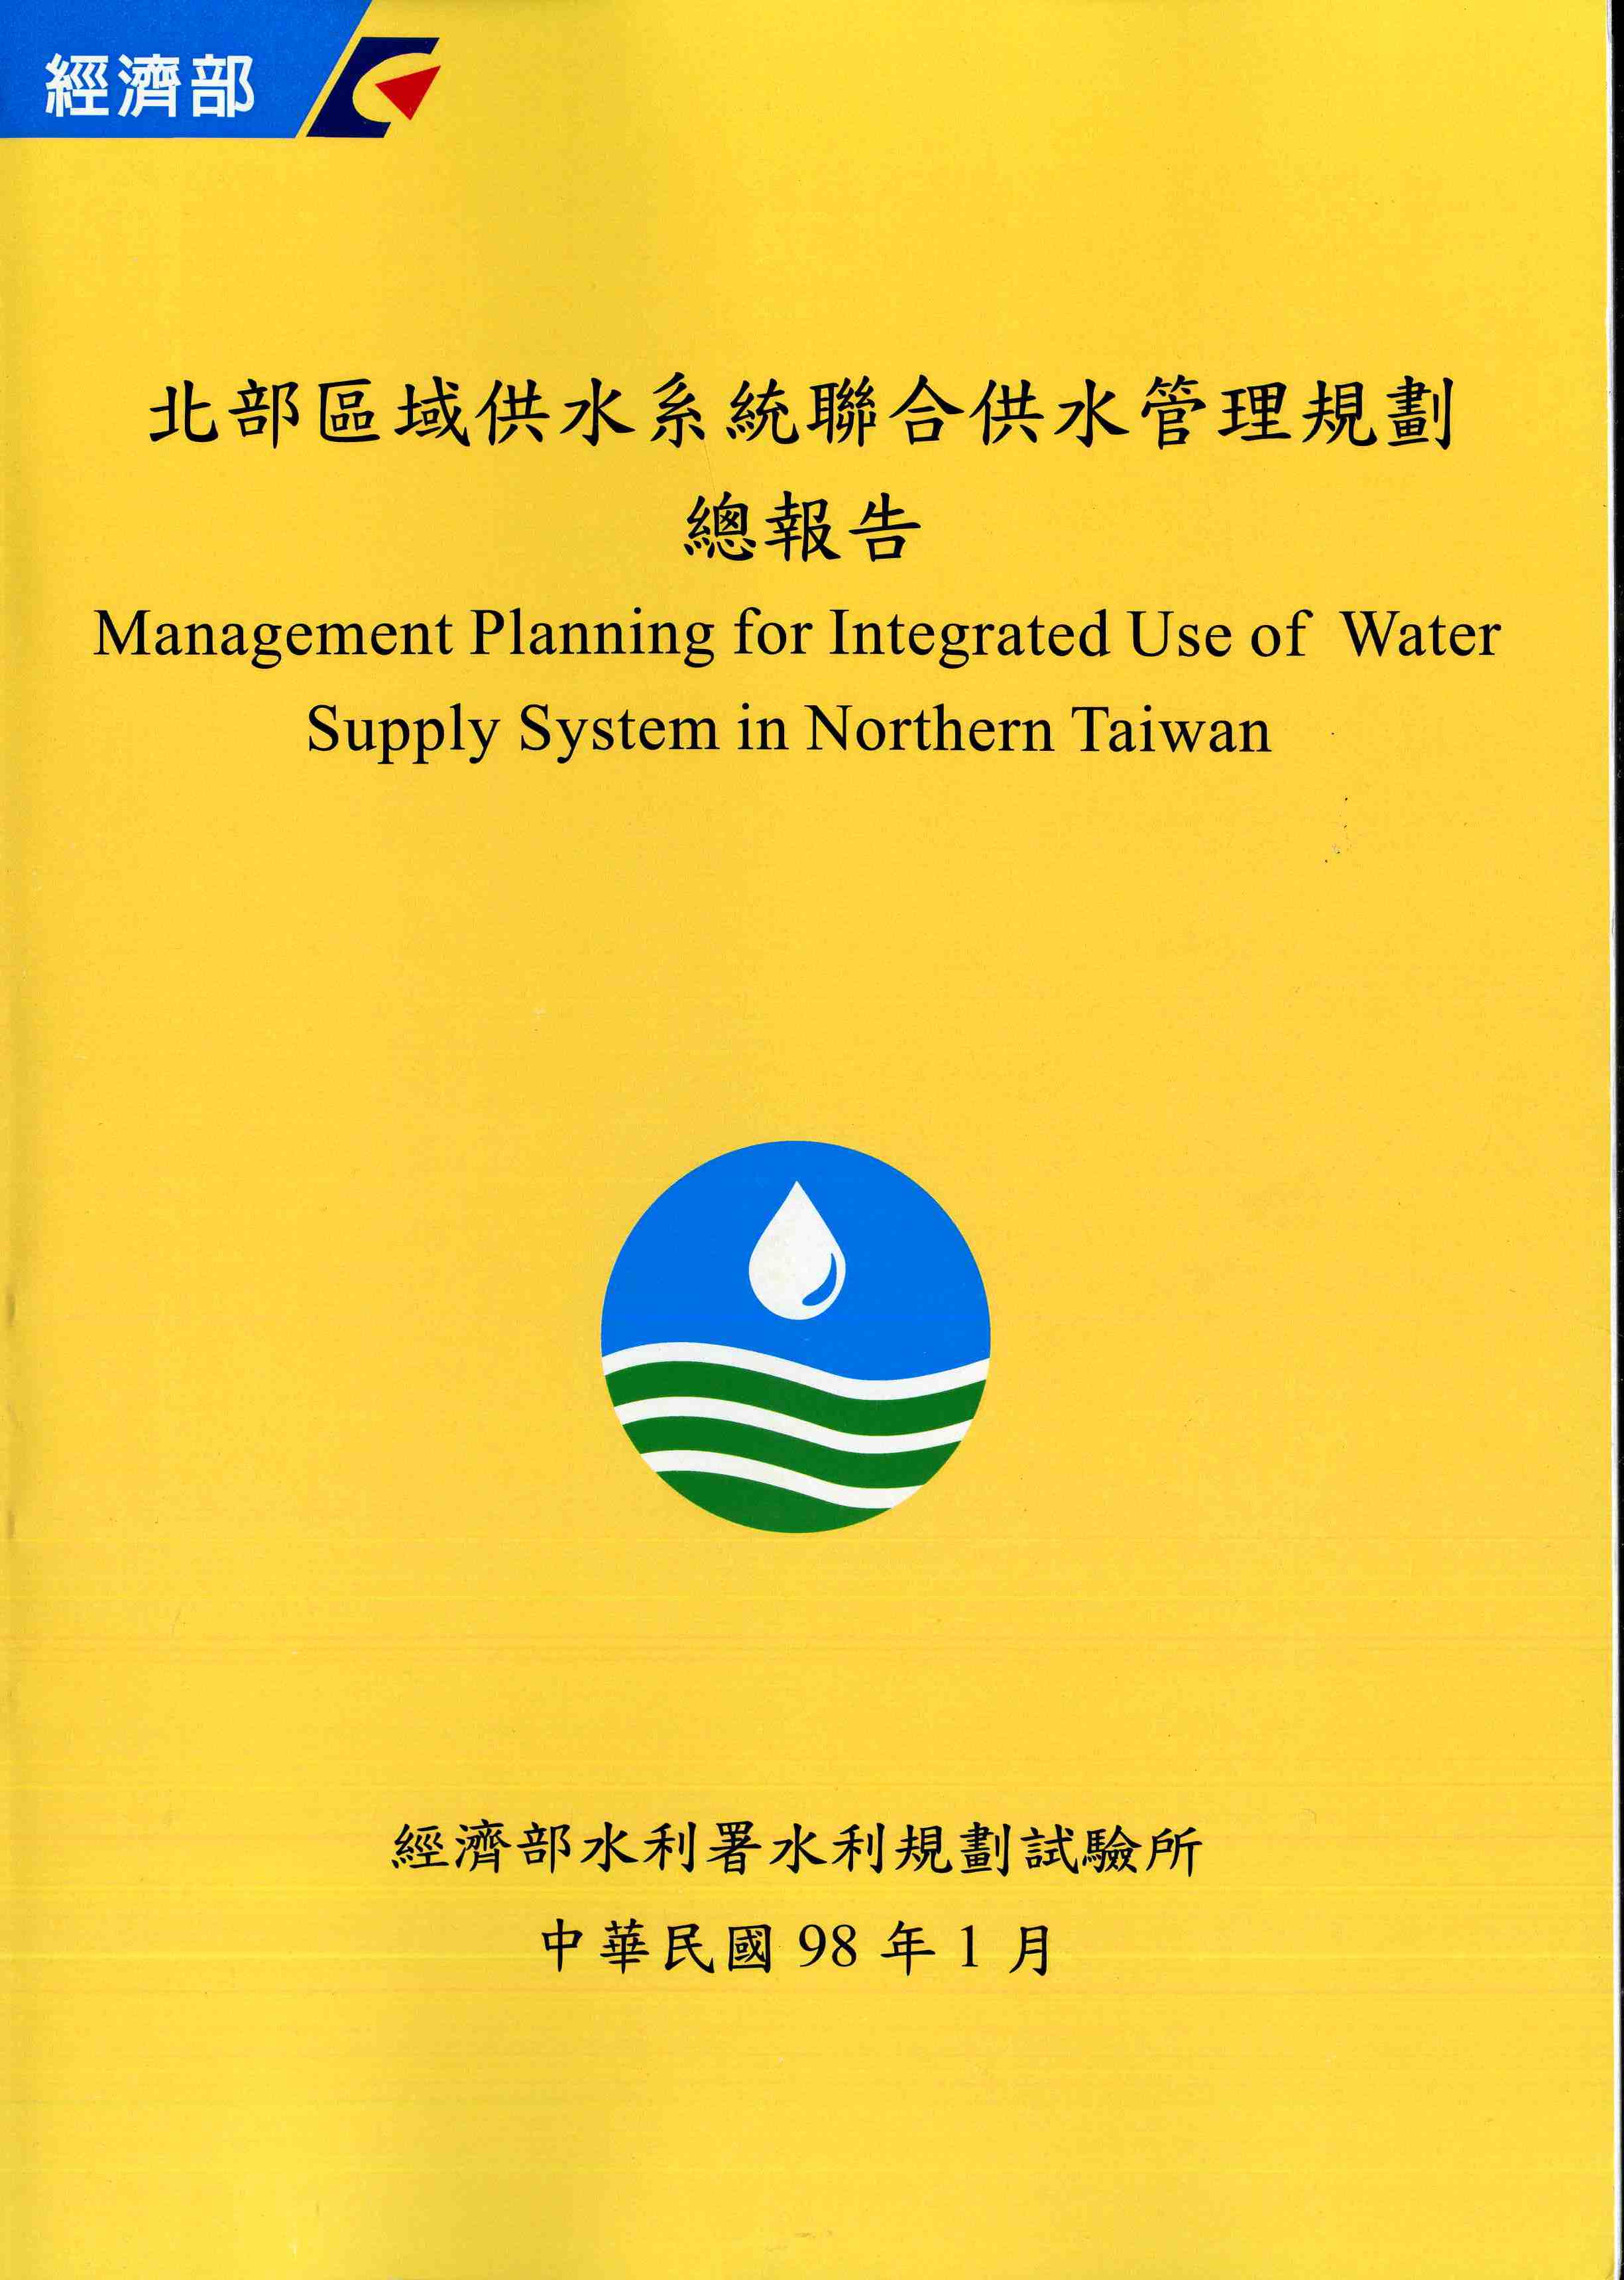 北部區域供水系統聯合供水管理規劃總報告